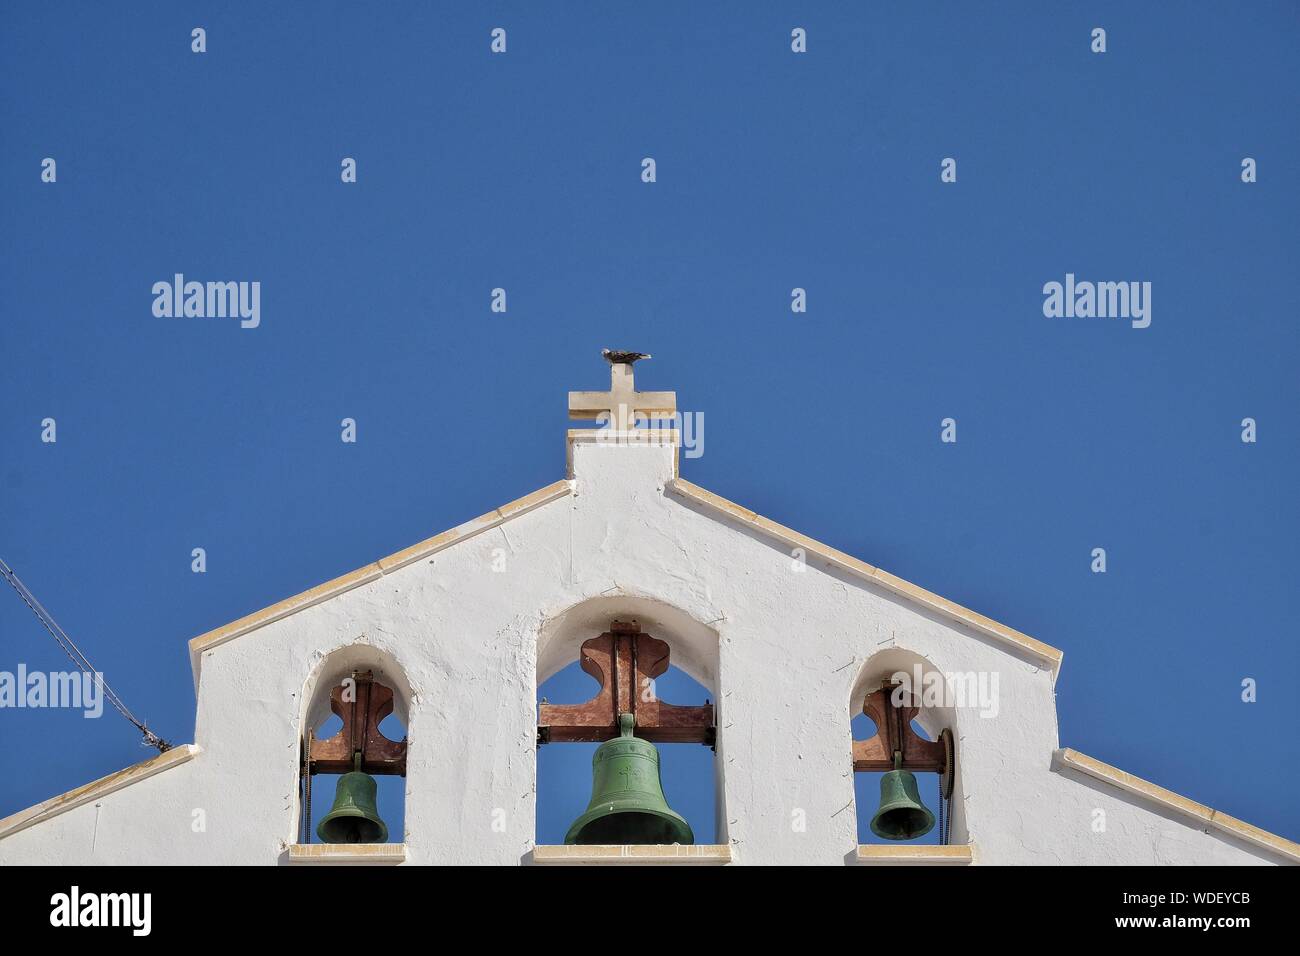 Ángulo de visión baja del campanario de la Iglesia contra el cielo azul claro Foto de stock